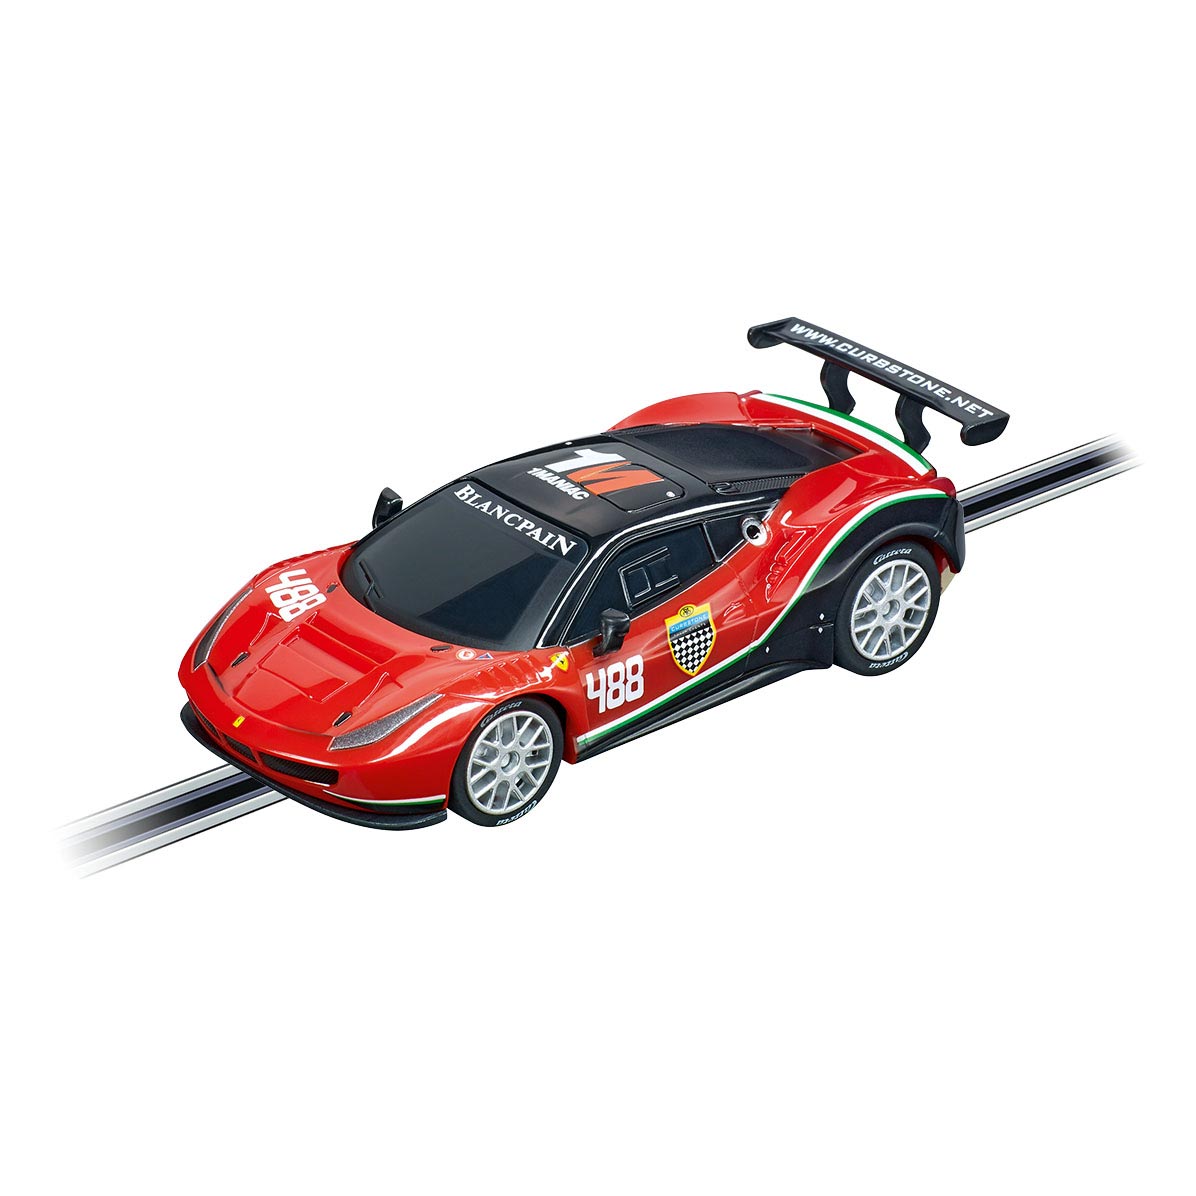 Carrera GO!!! Rennstrecke – Ferrari Pro Speeders